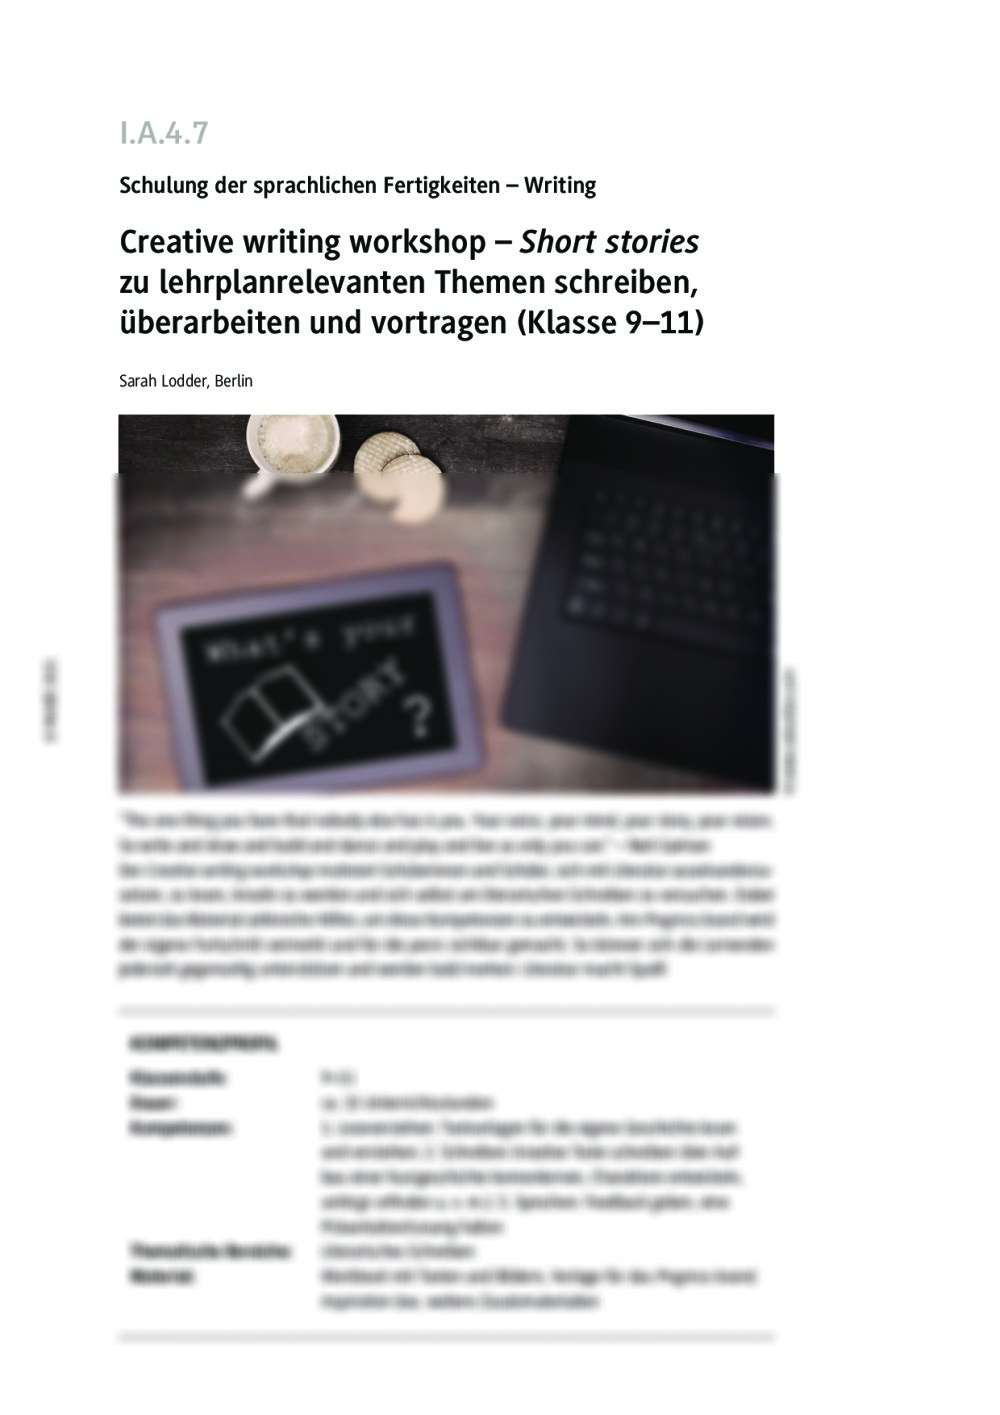 Creative writing workshop - Seite 1